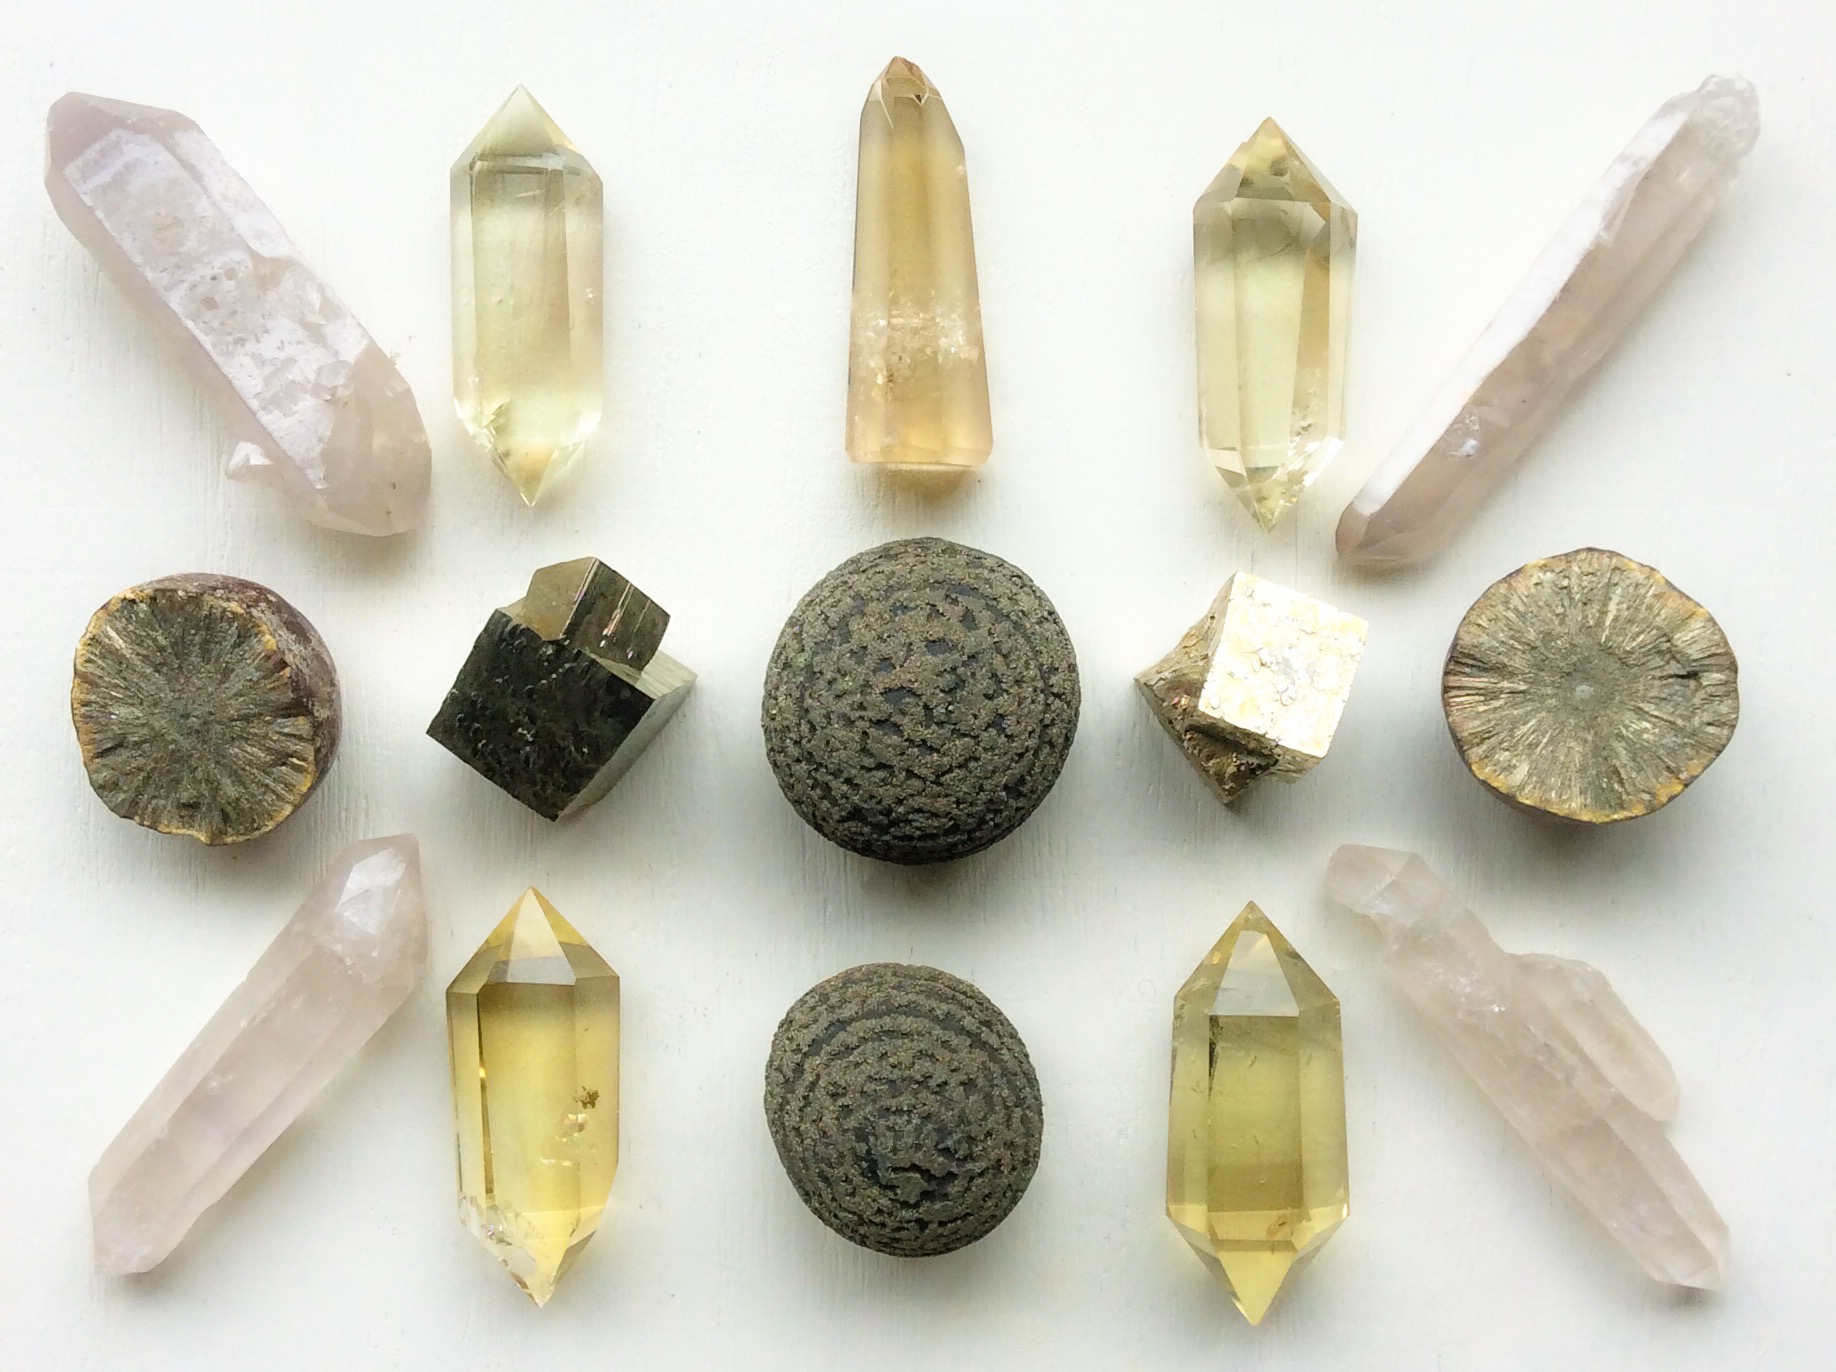 Concretised Pyrite, Pyrite, Marcasite, Citrine and Double-terminated Quartz